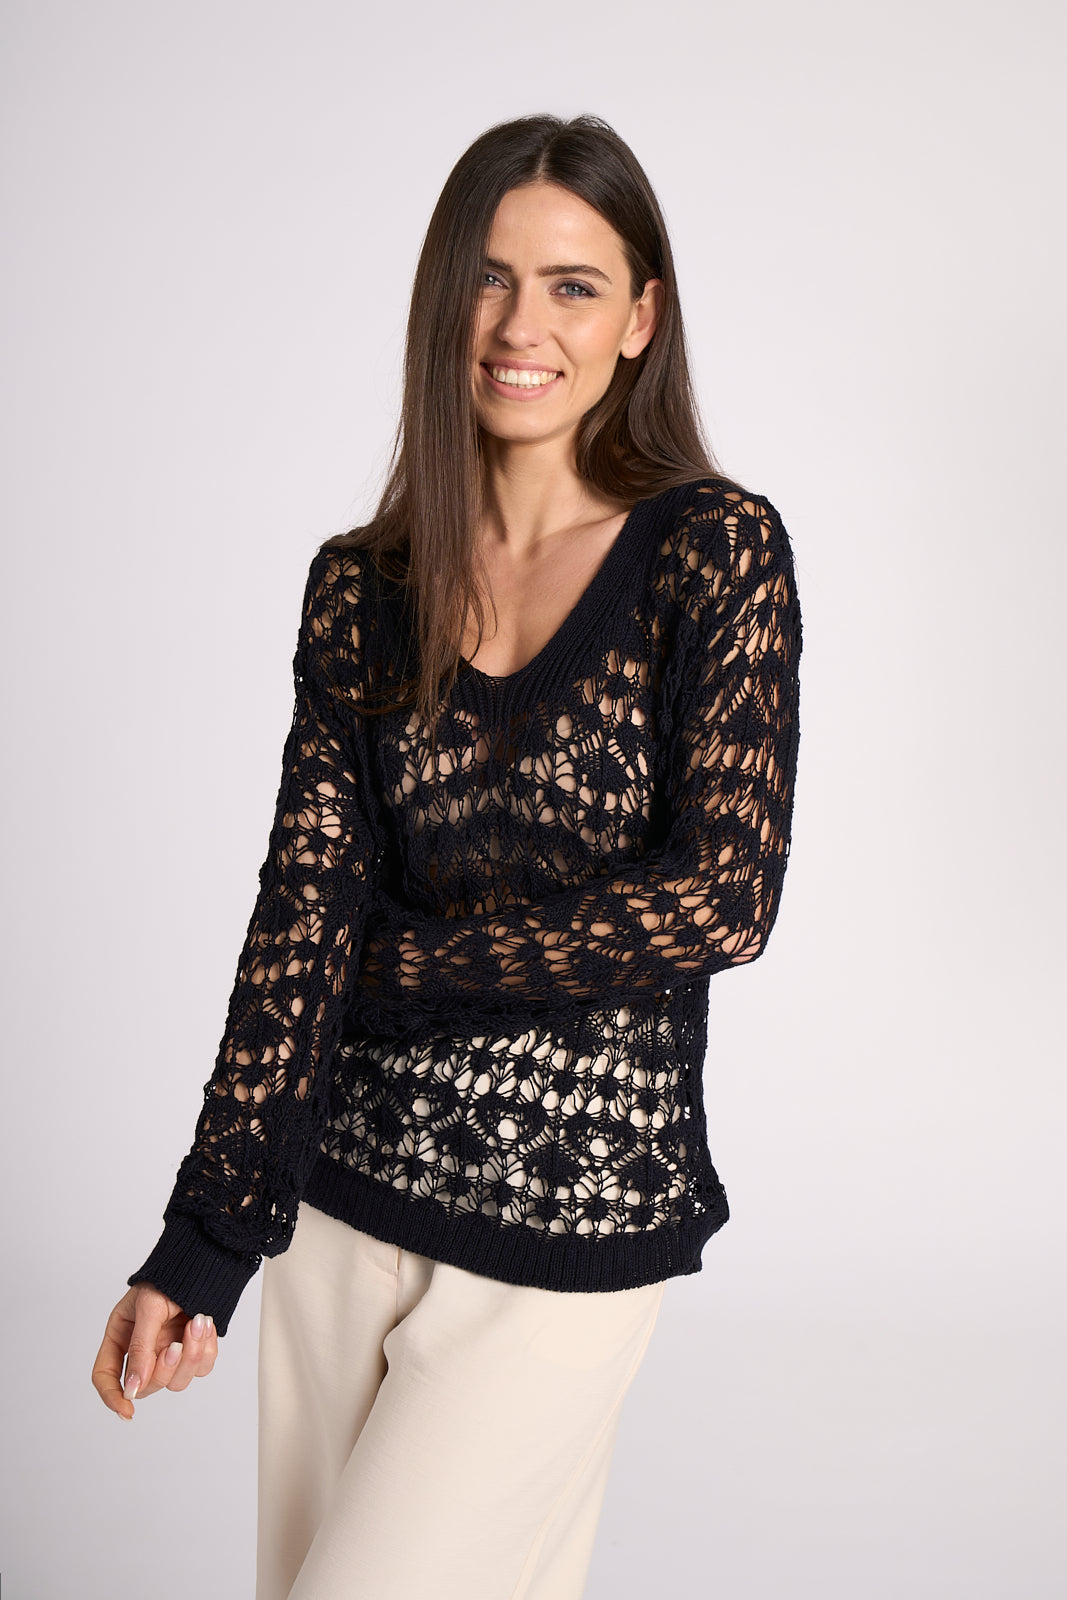 Crochet style top - Elisa